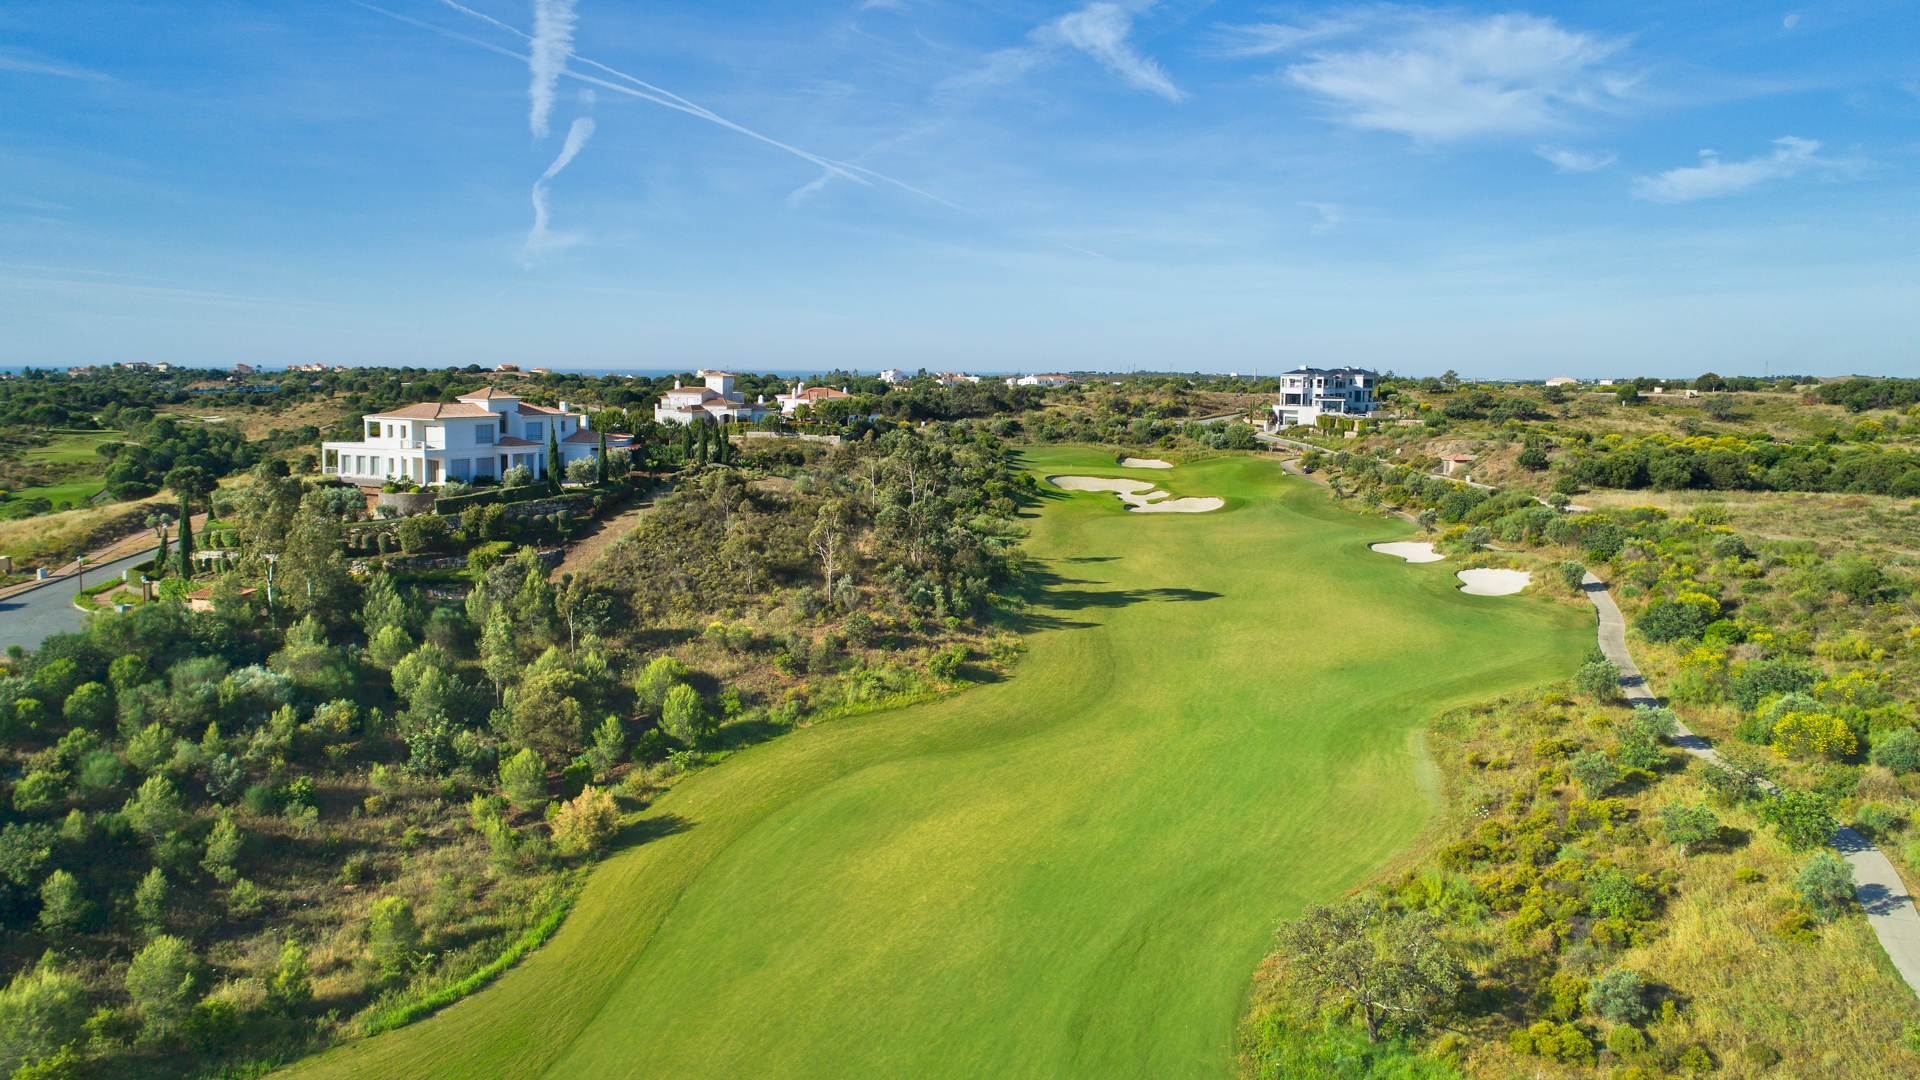 Auswahl von Grundstücken auf einem der schönsten Golfplätze Europas in der Ost Algarve | TV1588 Grundstücke auf dem Nummer 1 Golf Resort in Portugal mit herrlichem Blick auf dem Golfplatz Monte Rei in der Ost Algarve.